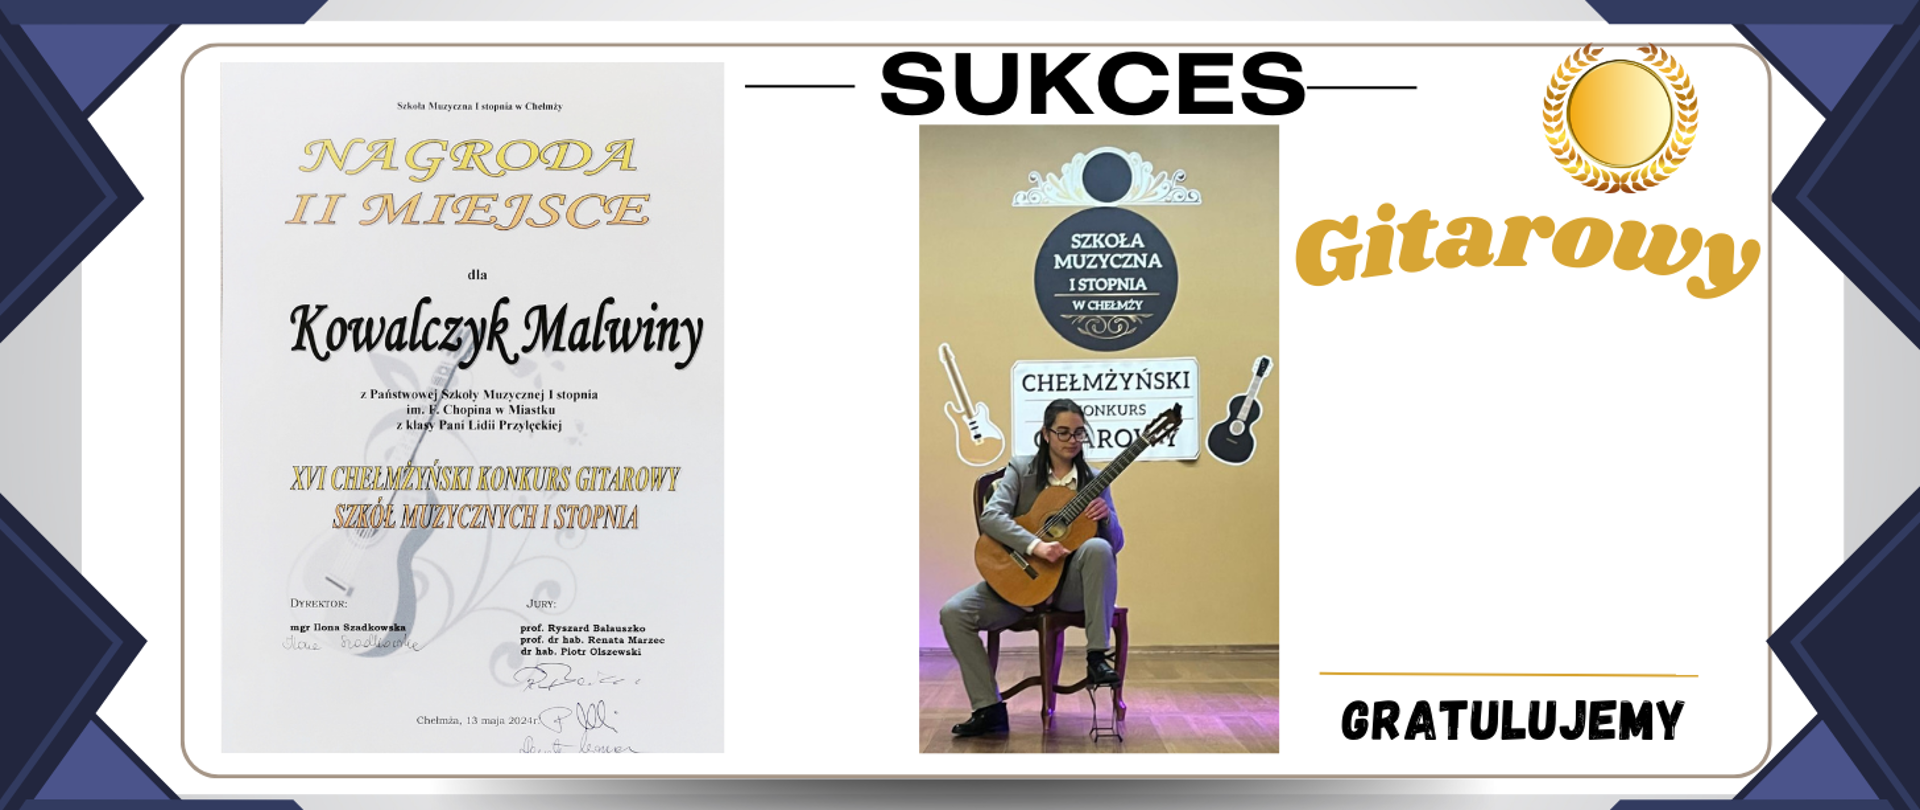 Grafika przedstawia po lewej stronie dyplom za zajęcie 2 miejsca przez Malwinę Kowalczyk w XVI Chełmżyńskim konkursie Gitarowym. Po prawej zamieszczone jest zdjęcie uczennicy podczas przesłuchania konkursowego.